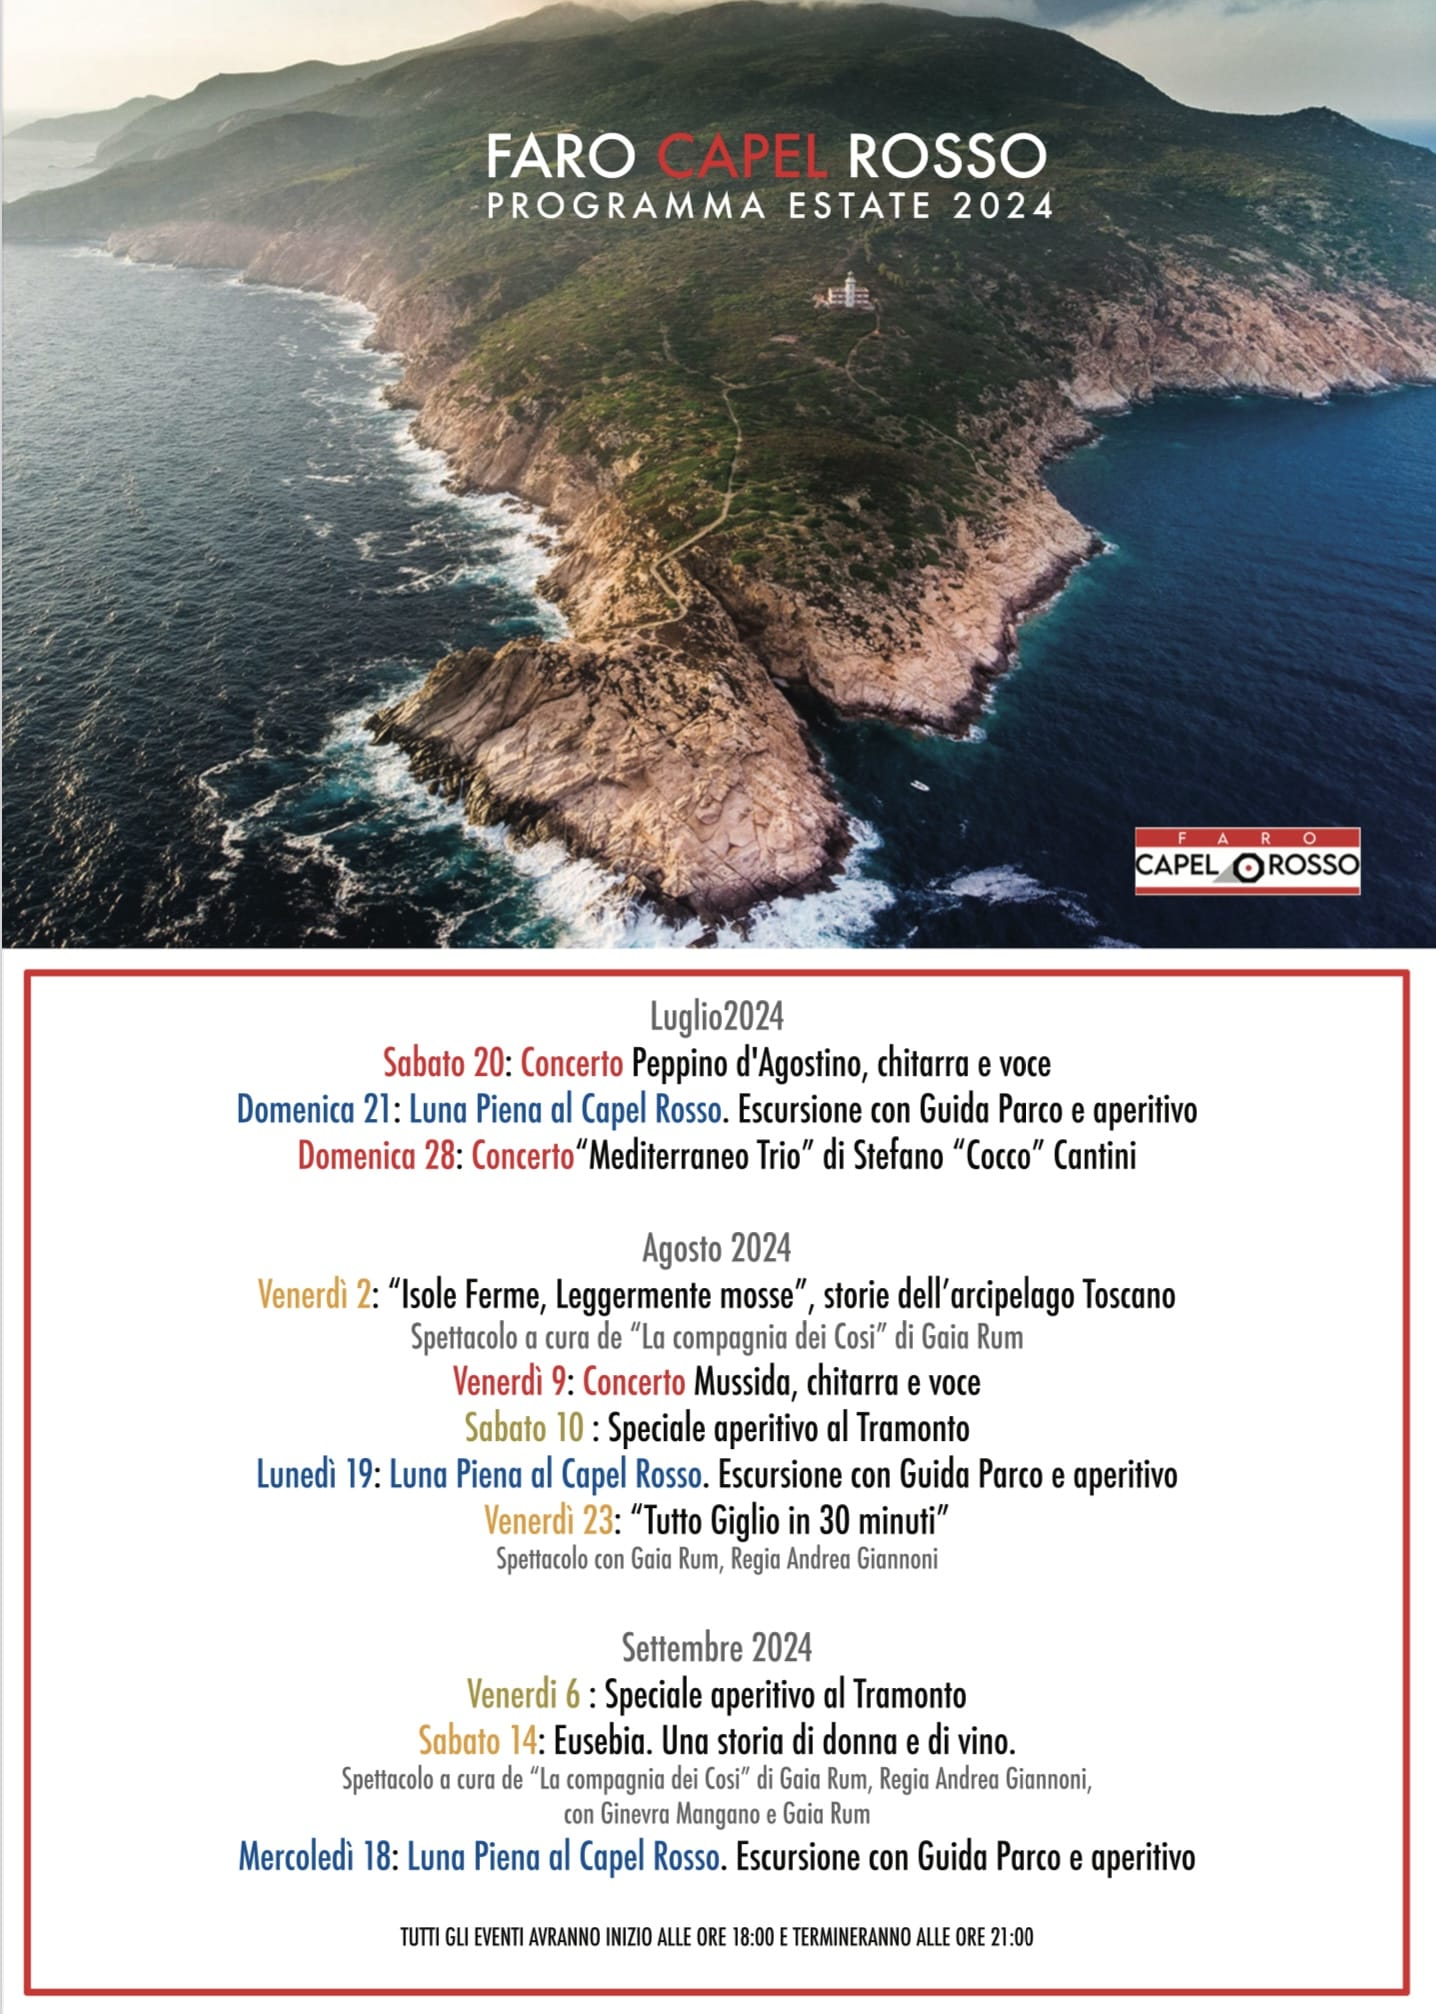 Programma Eventi Faro Capel Rosso  all'Isola del Giglio Estate 2024